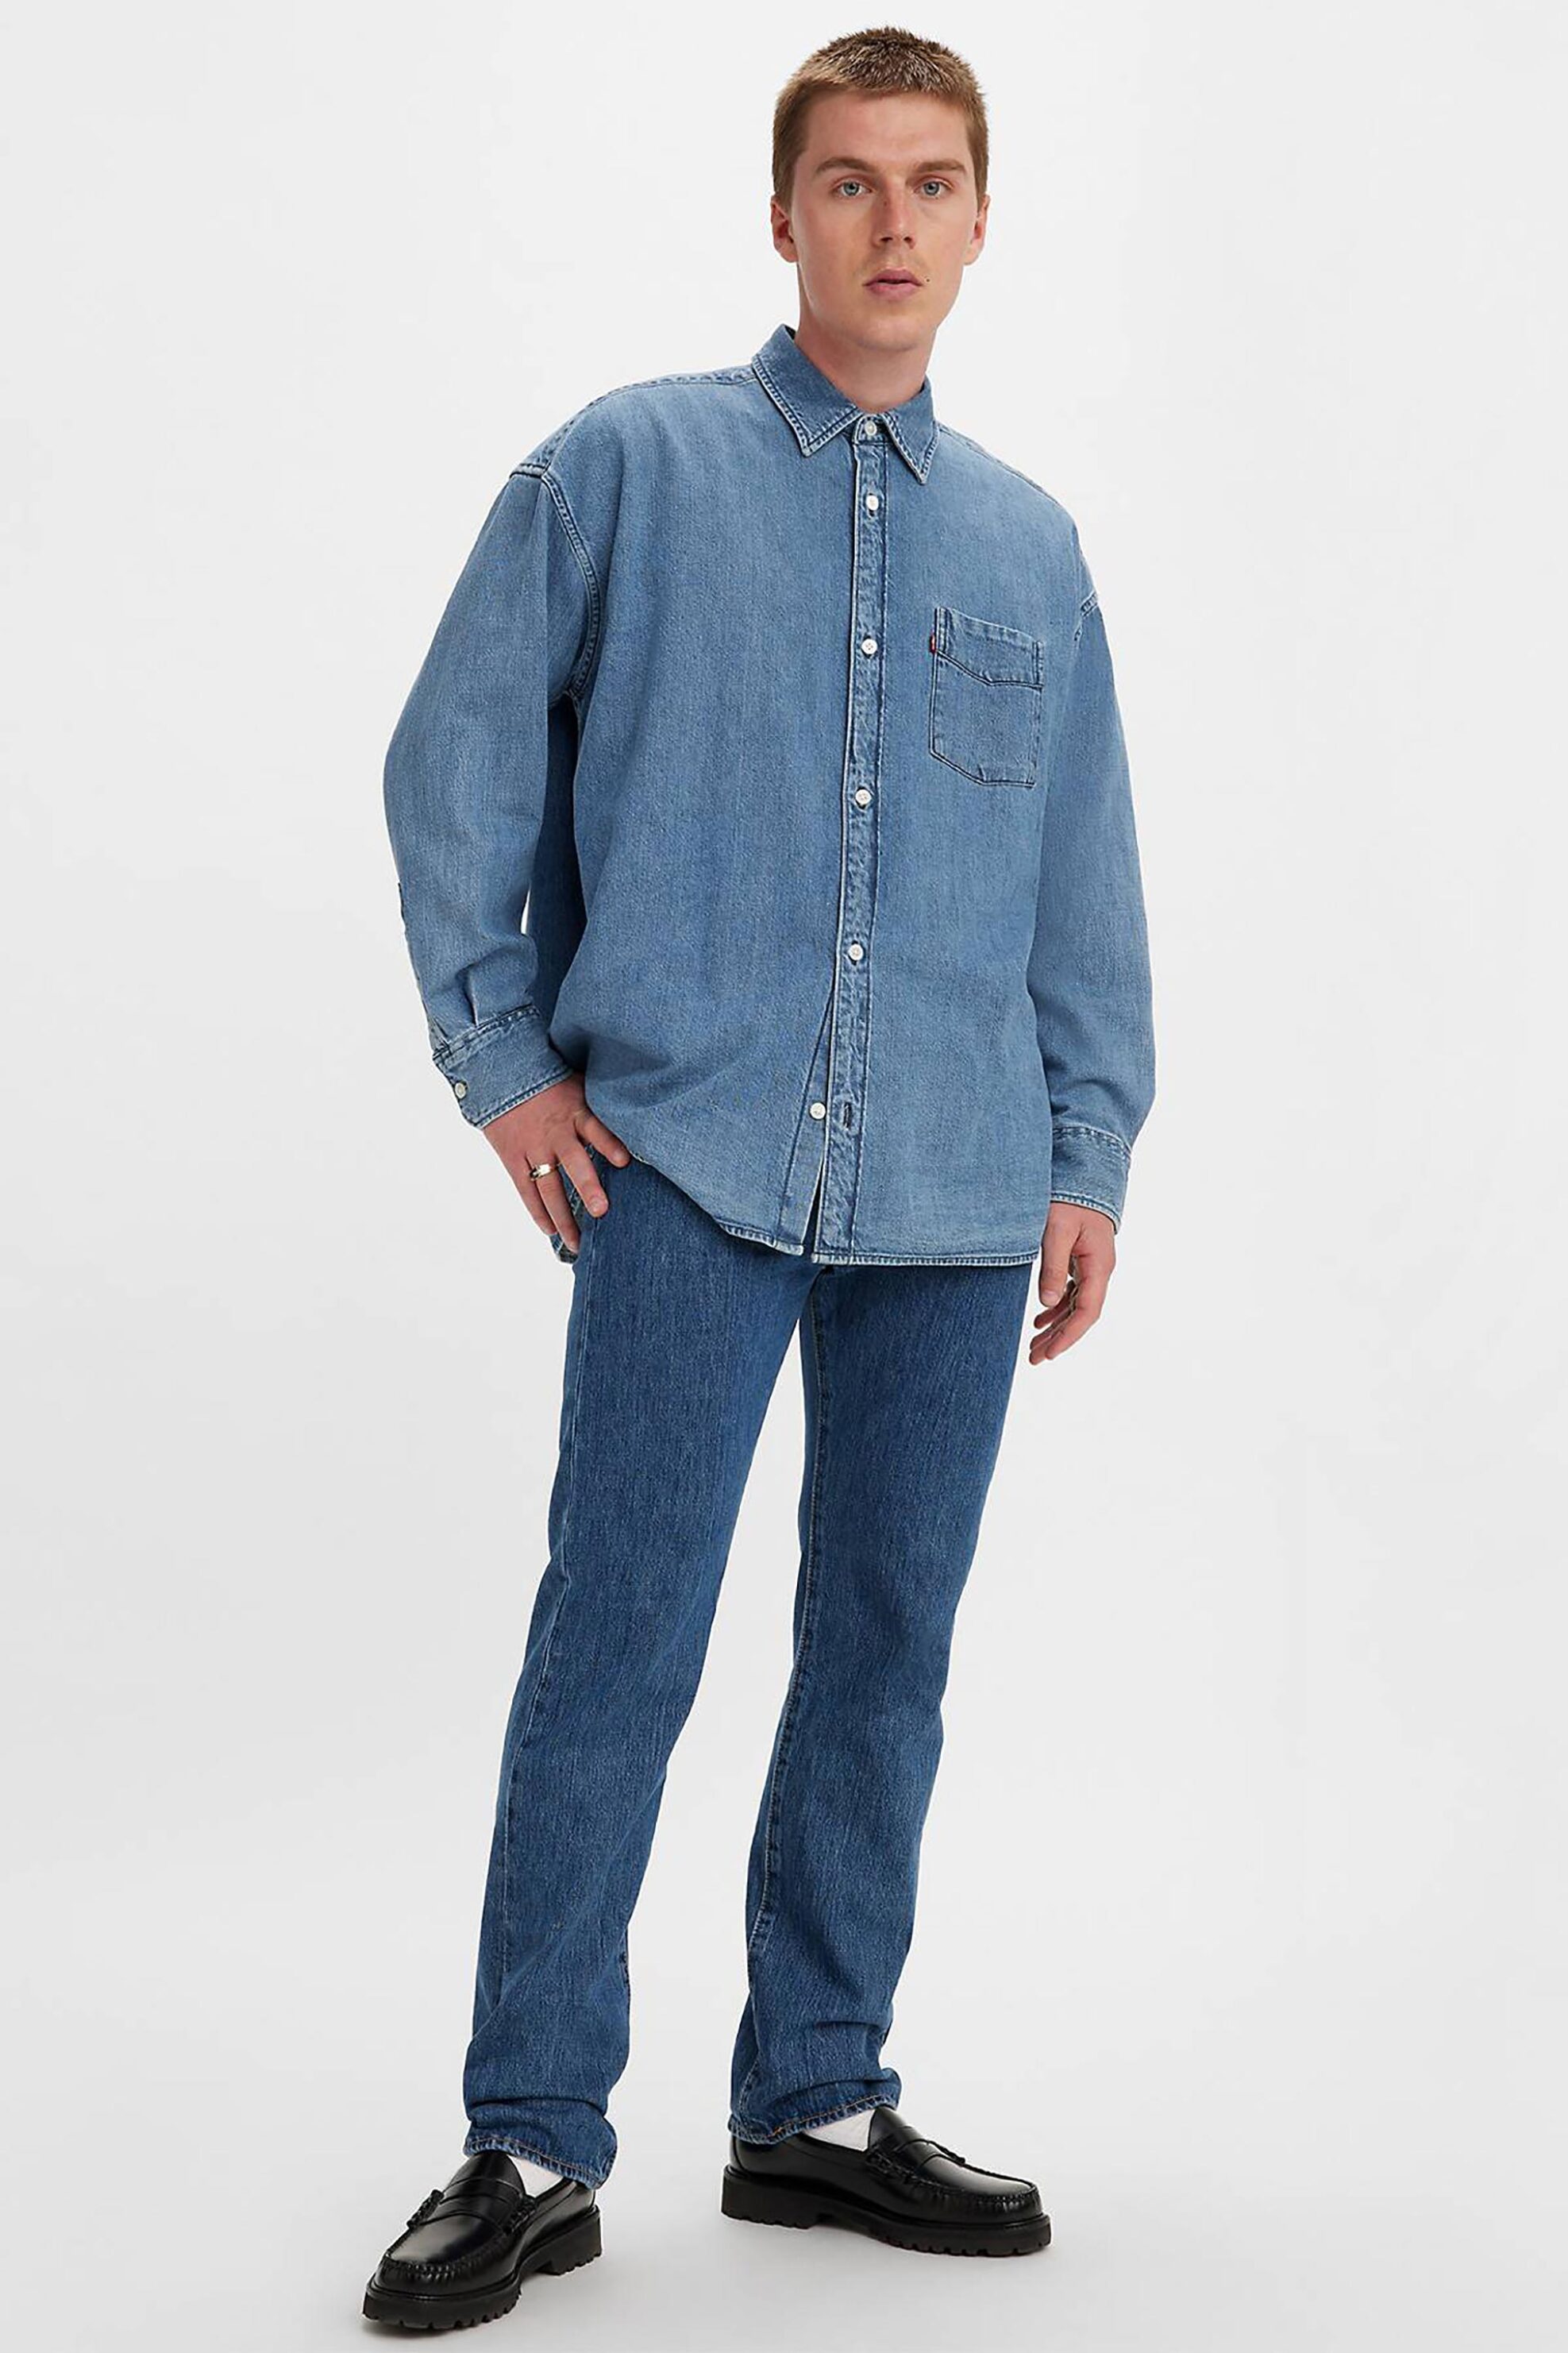 Ανδρική Μόδα > Ανδρικά Ρούχα > Ανδρικά Τζιν > Ανδρικά Τζιν Straight Levi's® ανδρικό τζην παντελόνι πεντάτσεπο Stonewash Straight Fit "501® Original" - 005010114 Denim Blue